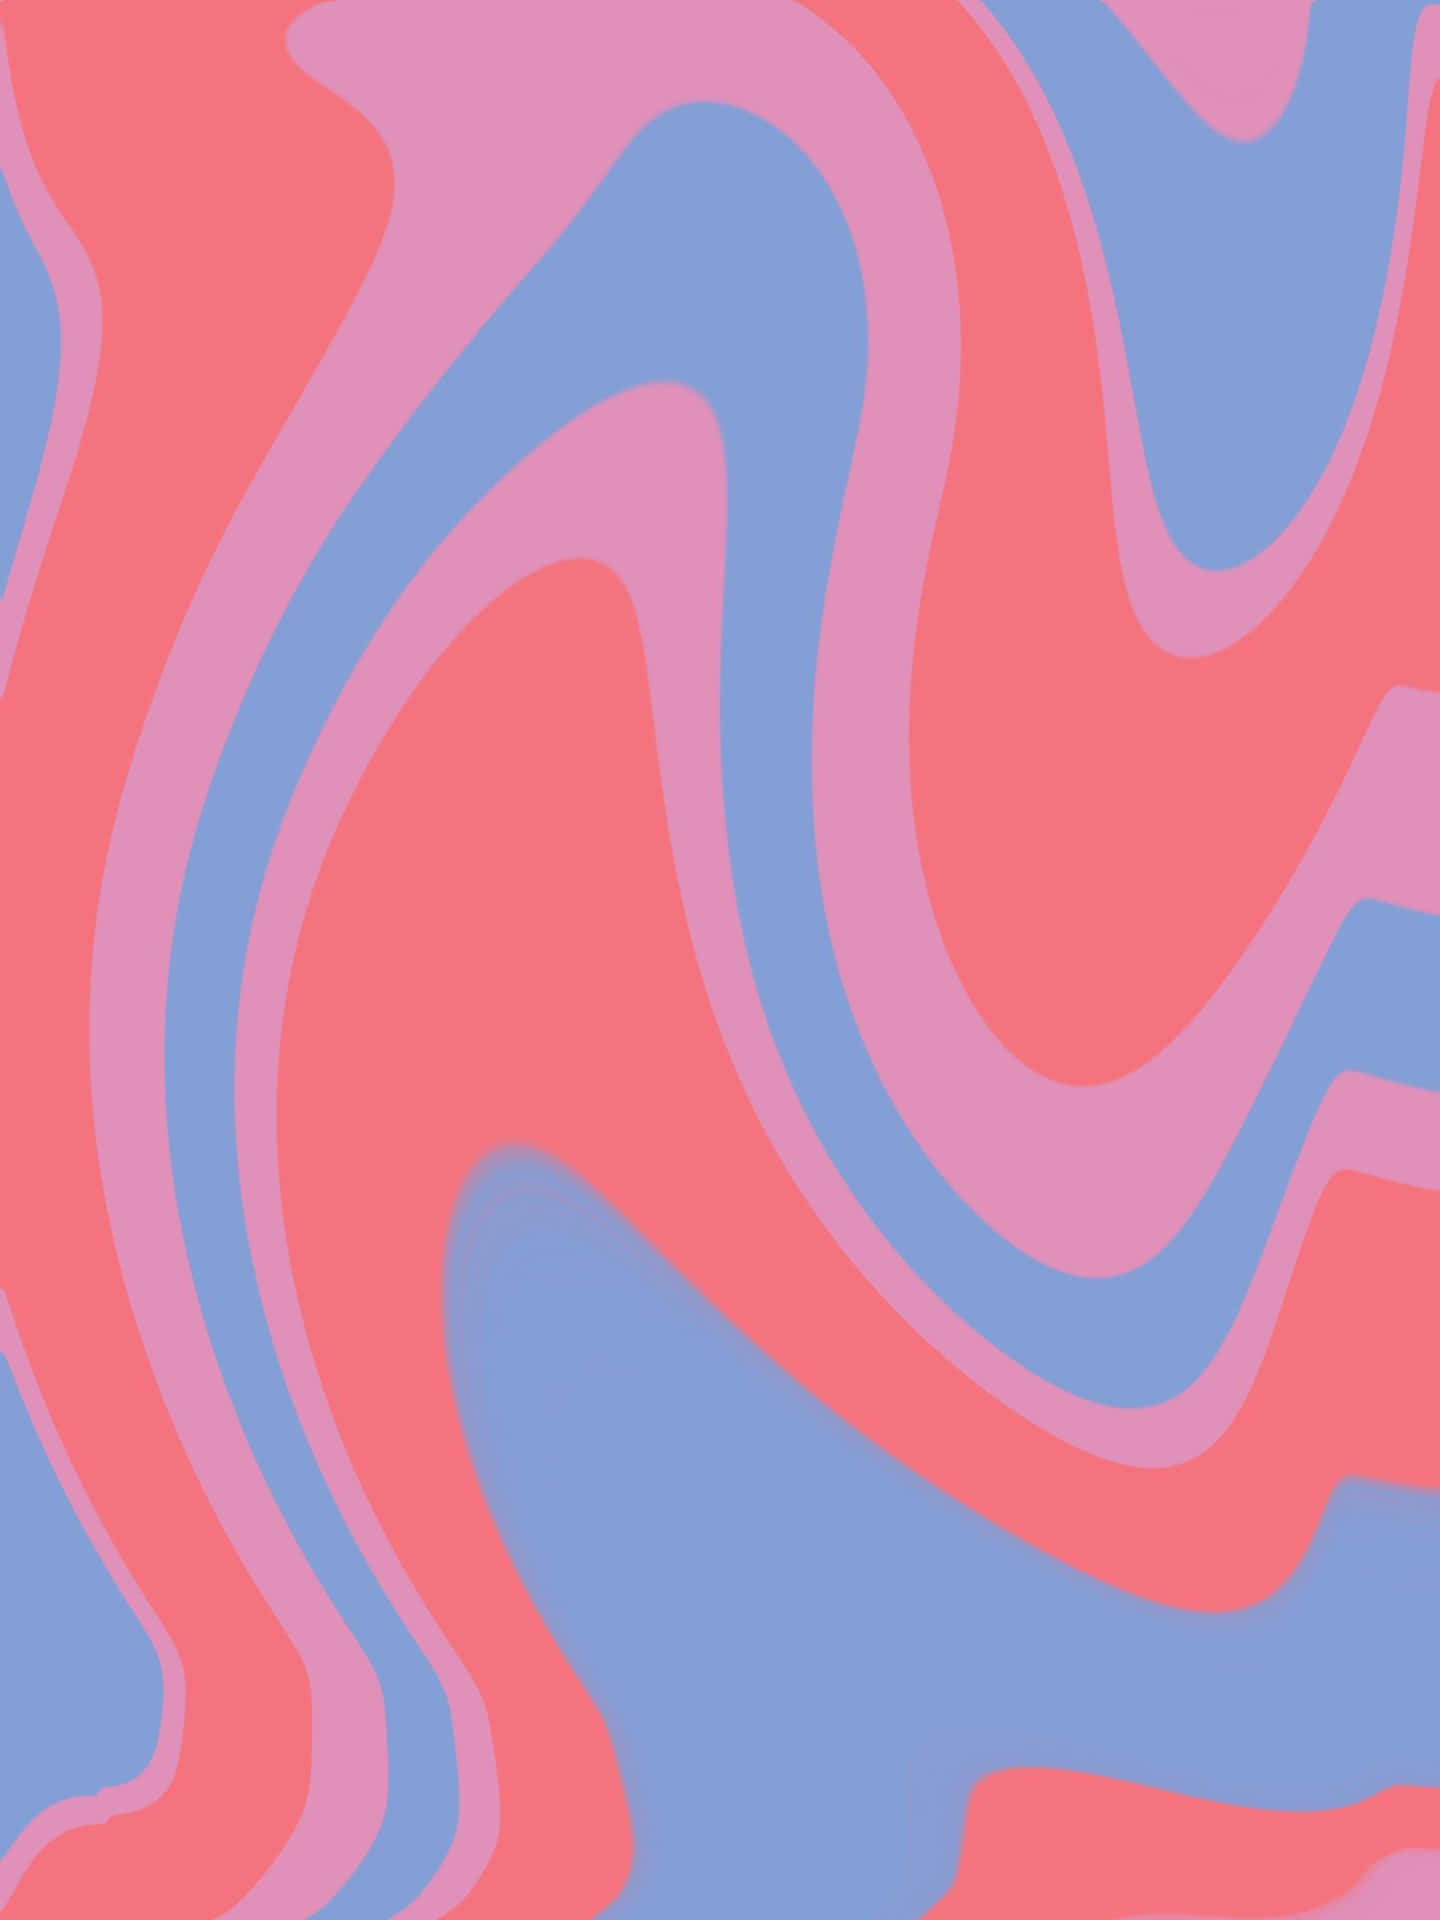 A beautiful pink swirl background